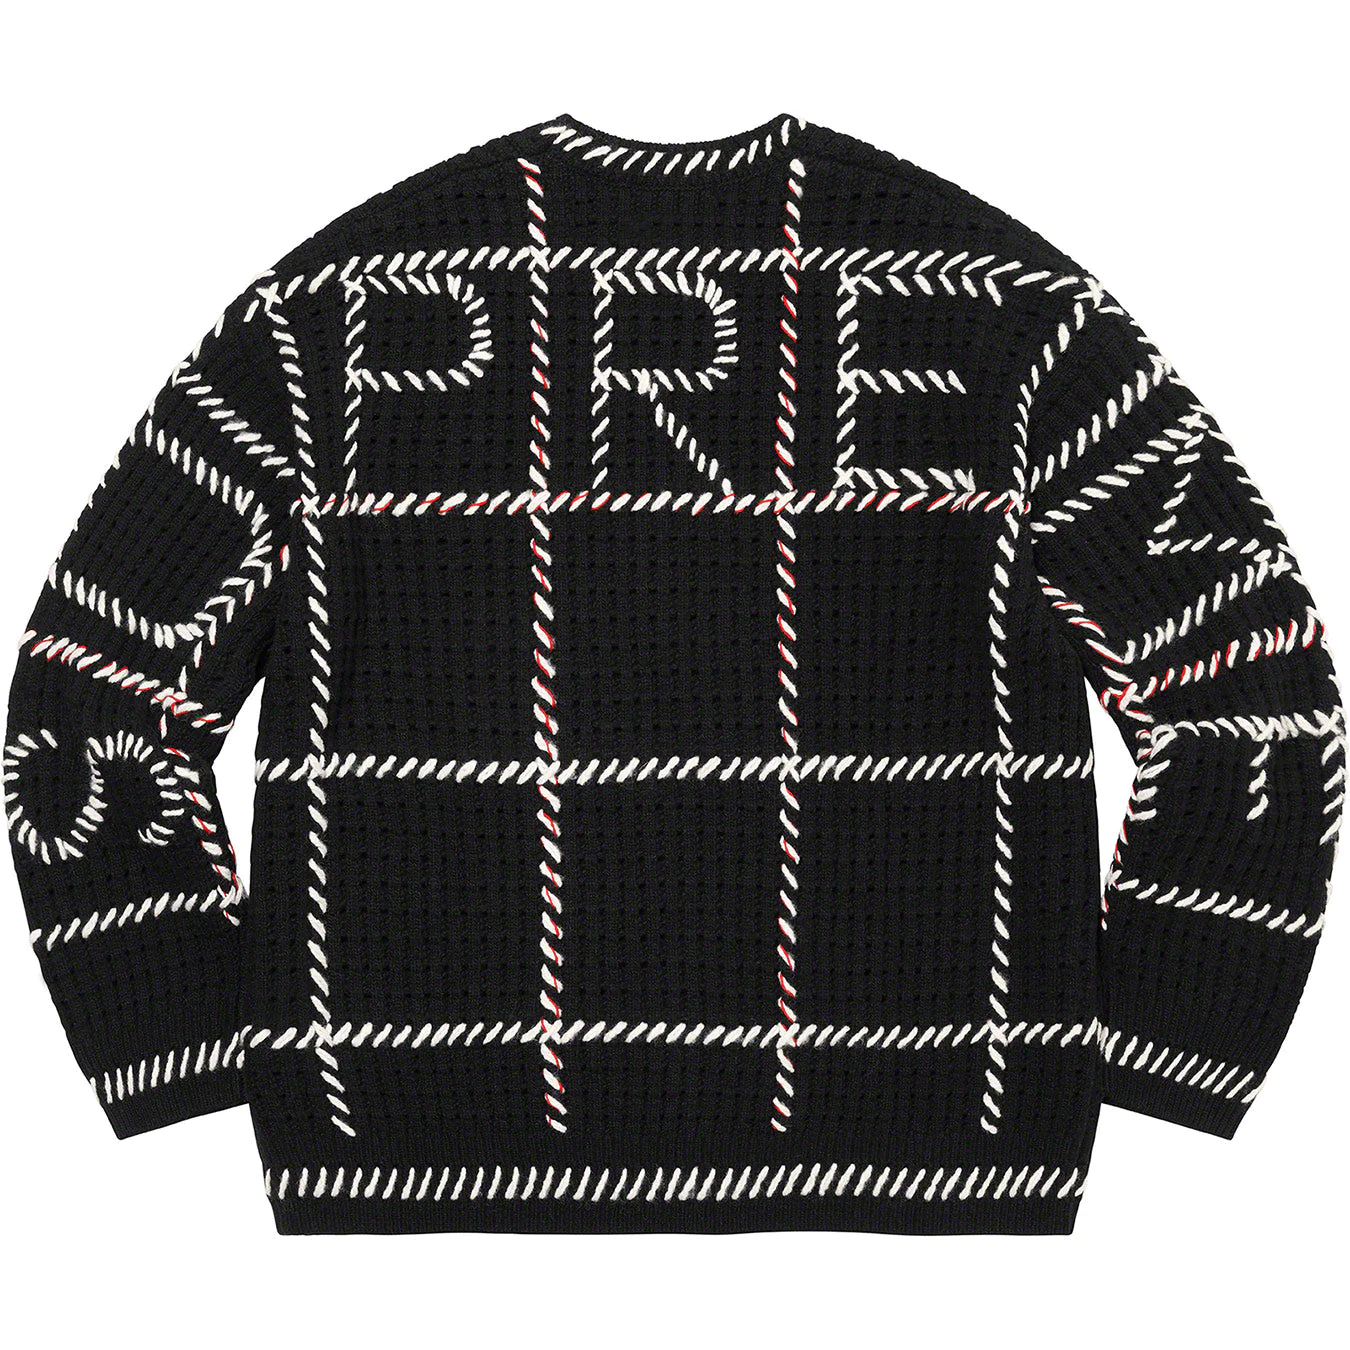 Supreme Quilt Stitch Sweater